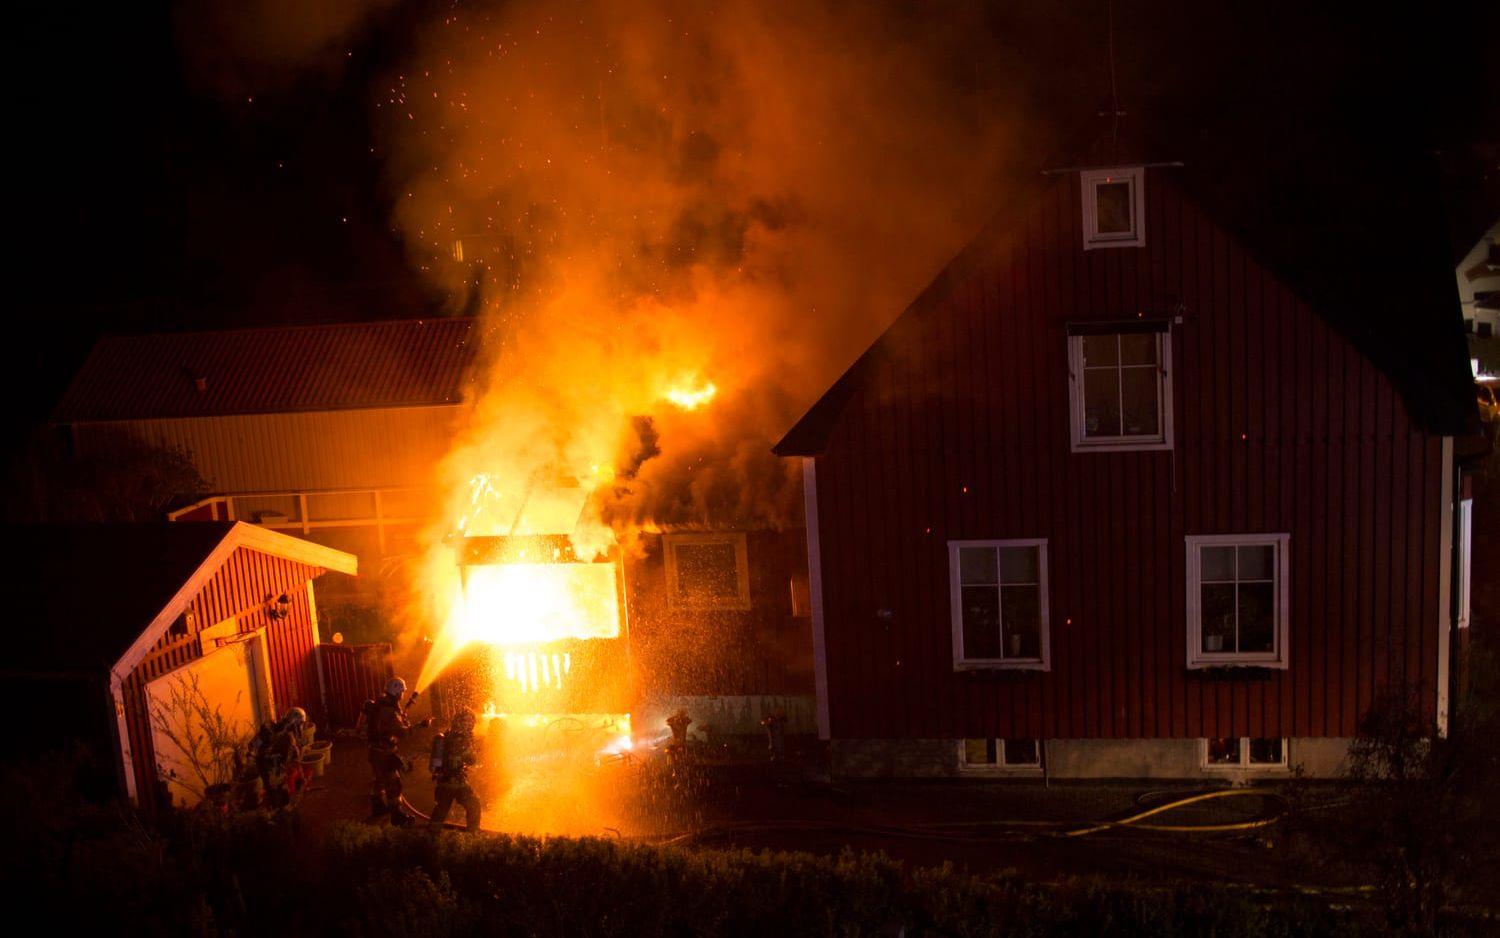 Tre av bränderna anlades i samma bostadsområde i Kungsbacka under natten mot söndagen. Bild: Läsarbild